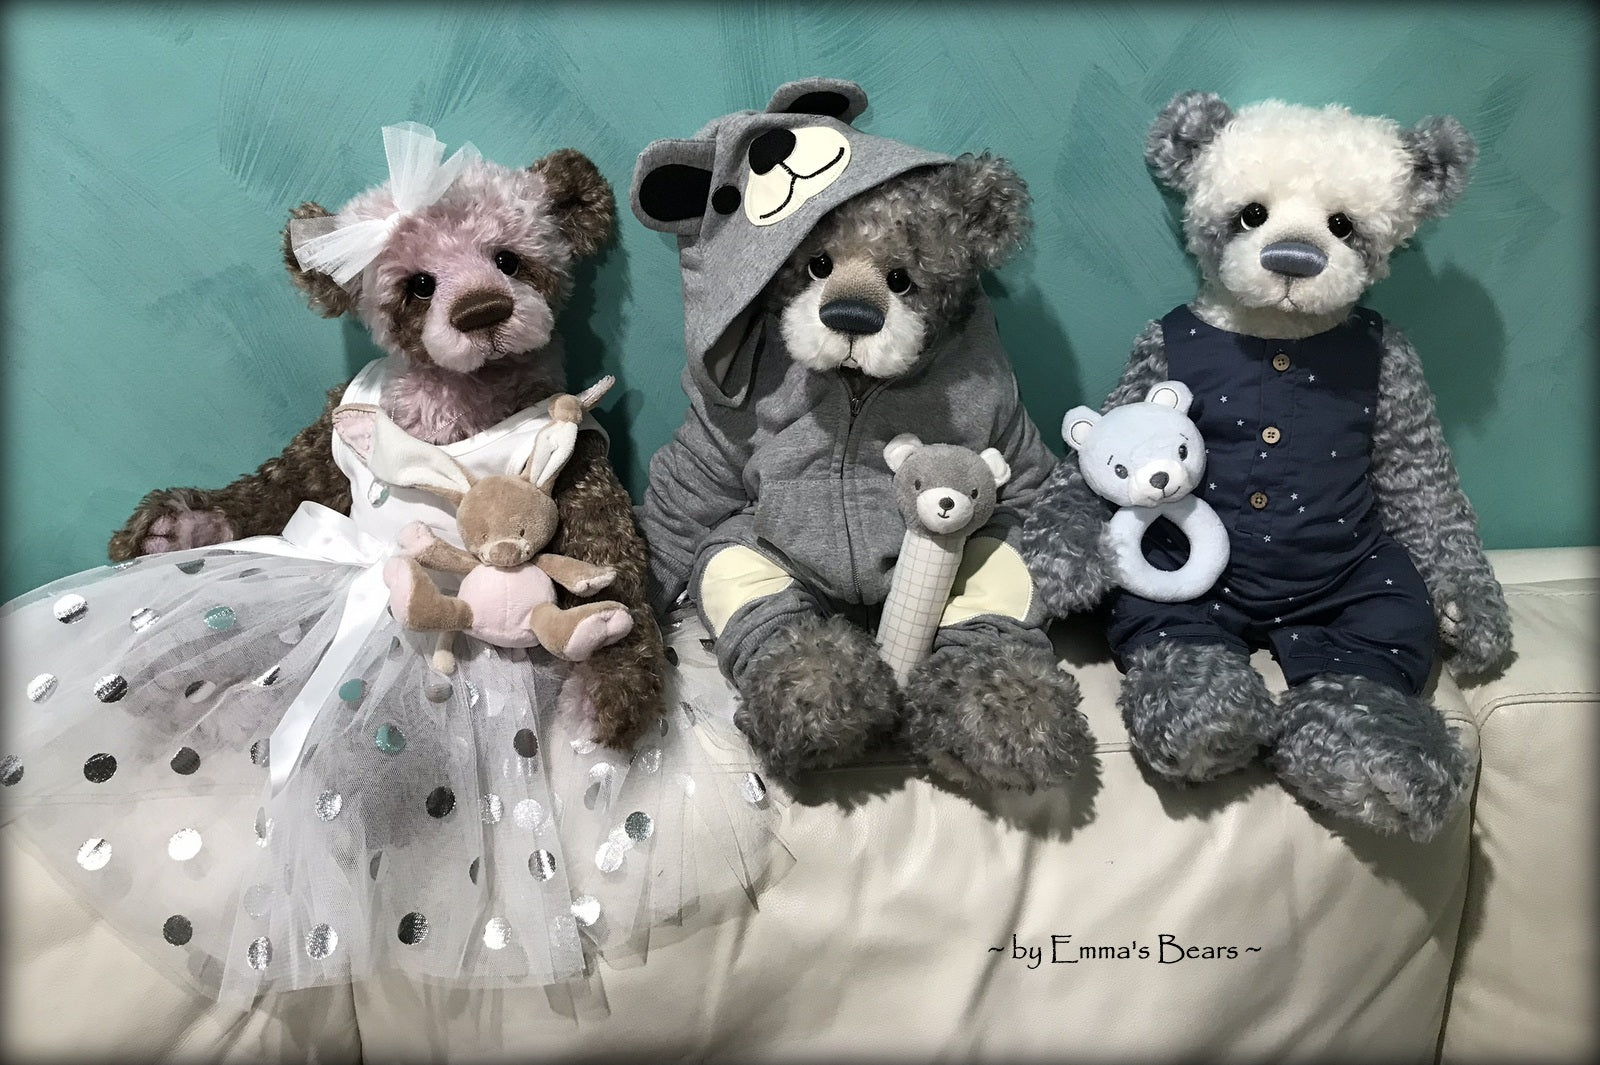 Violette Edie - 22in MOHAIR Artist toddler style Bear by Emmas Bears - OOAK